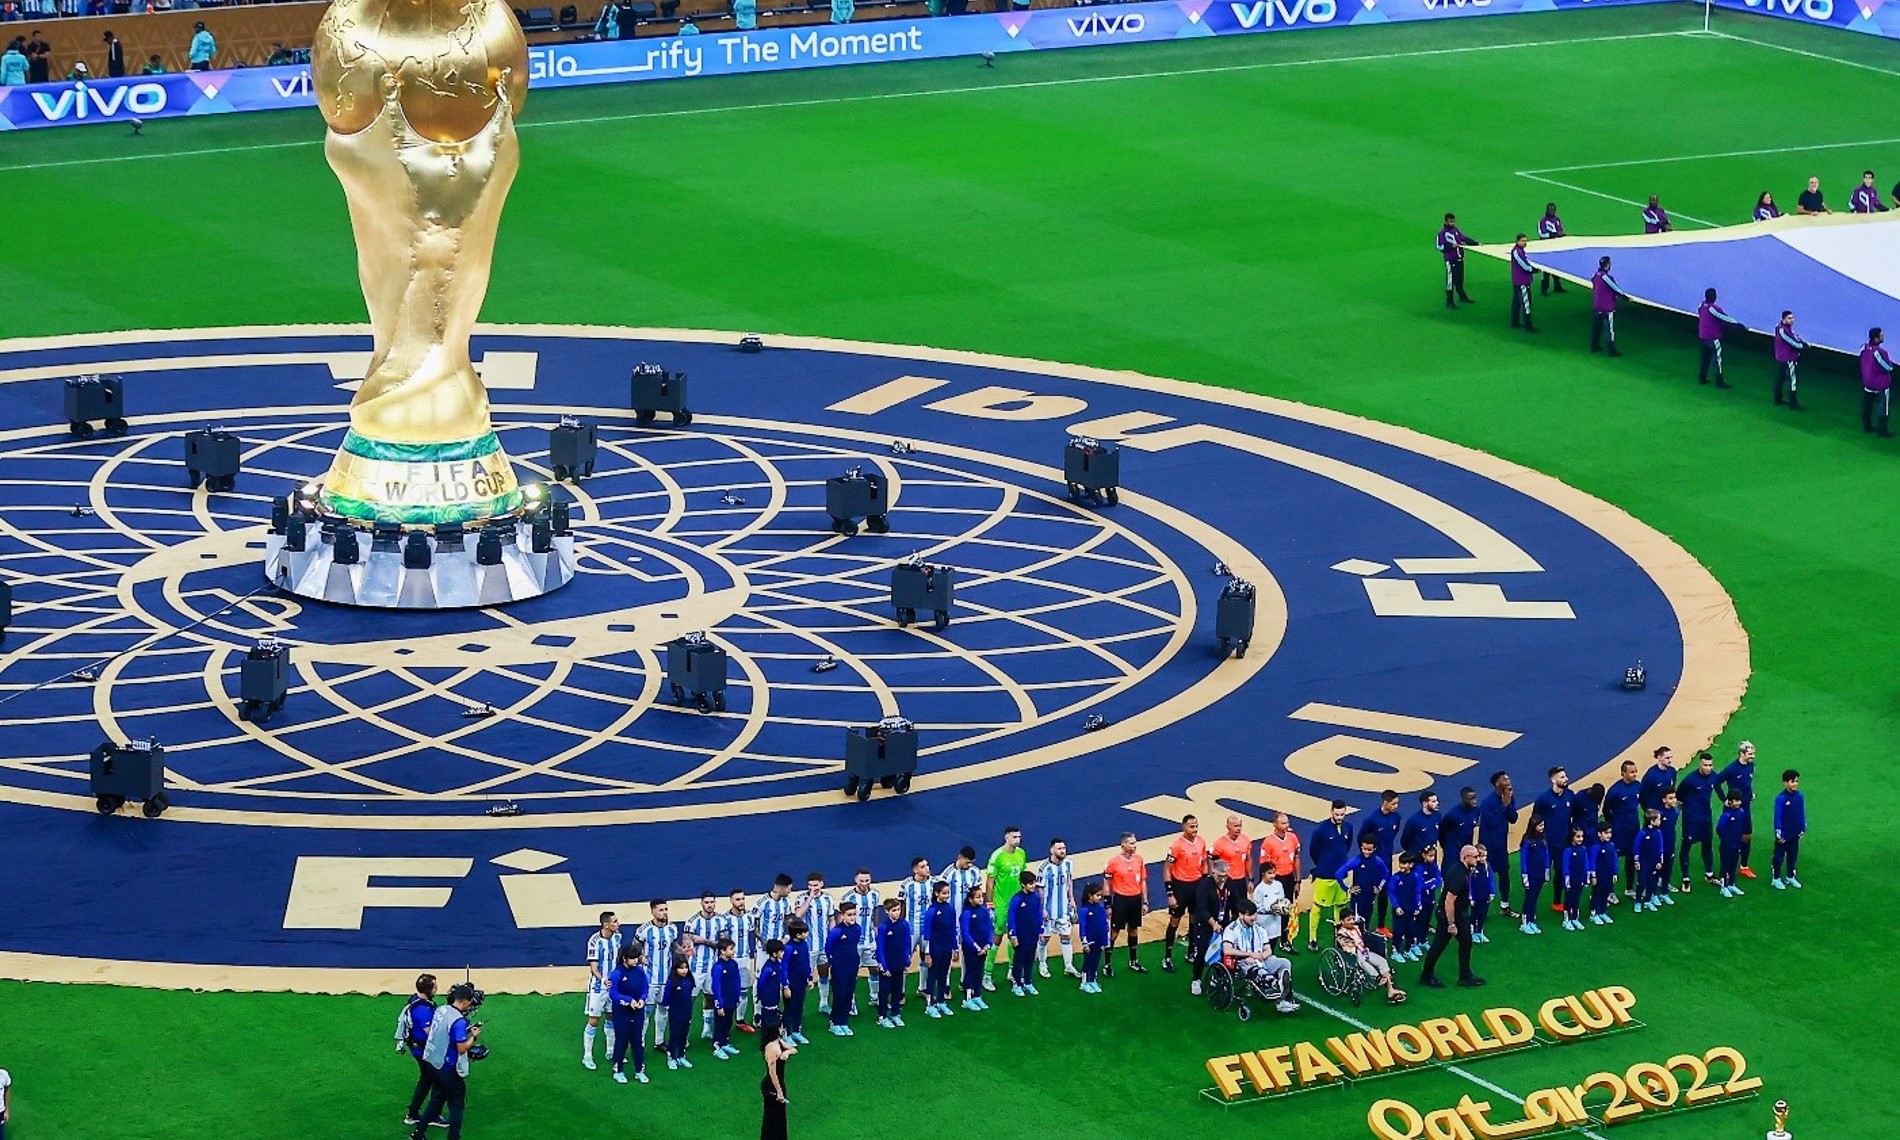 vivo tworzy niezapomniane chwile dla kibiców na całym świecie na Mistrzostwach Świata FIFA w Katarze 2022™